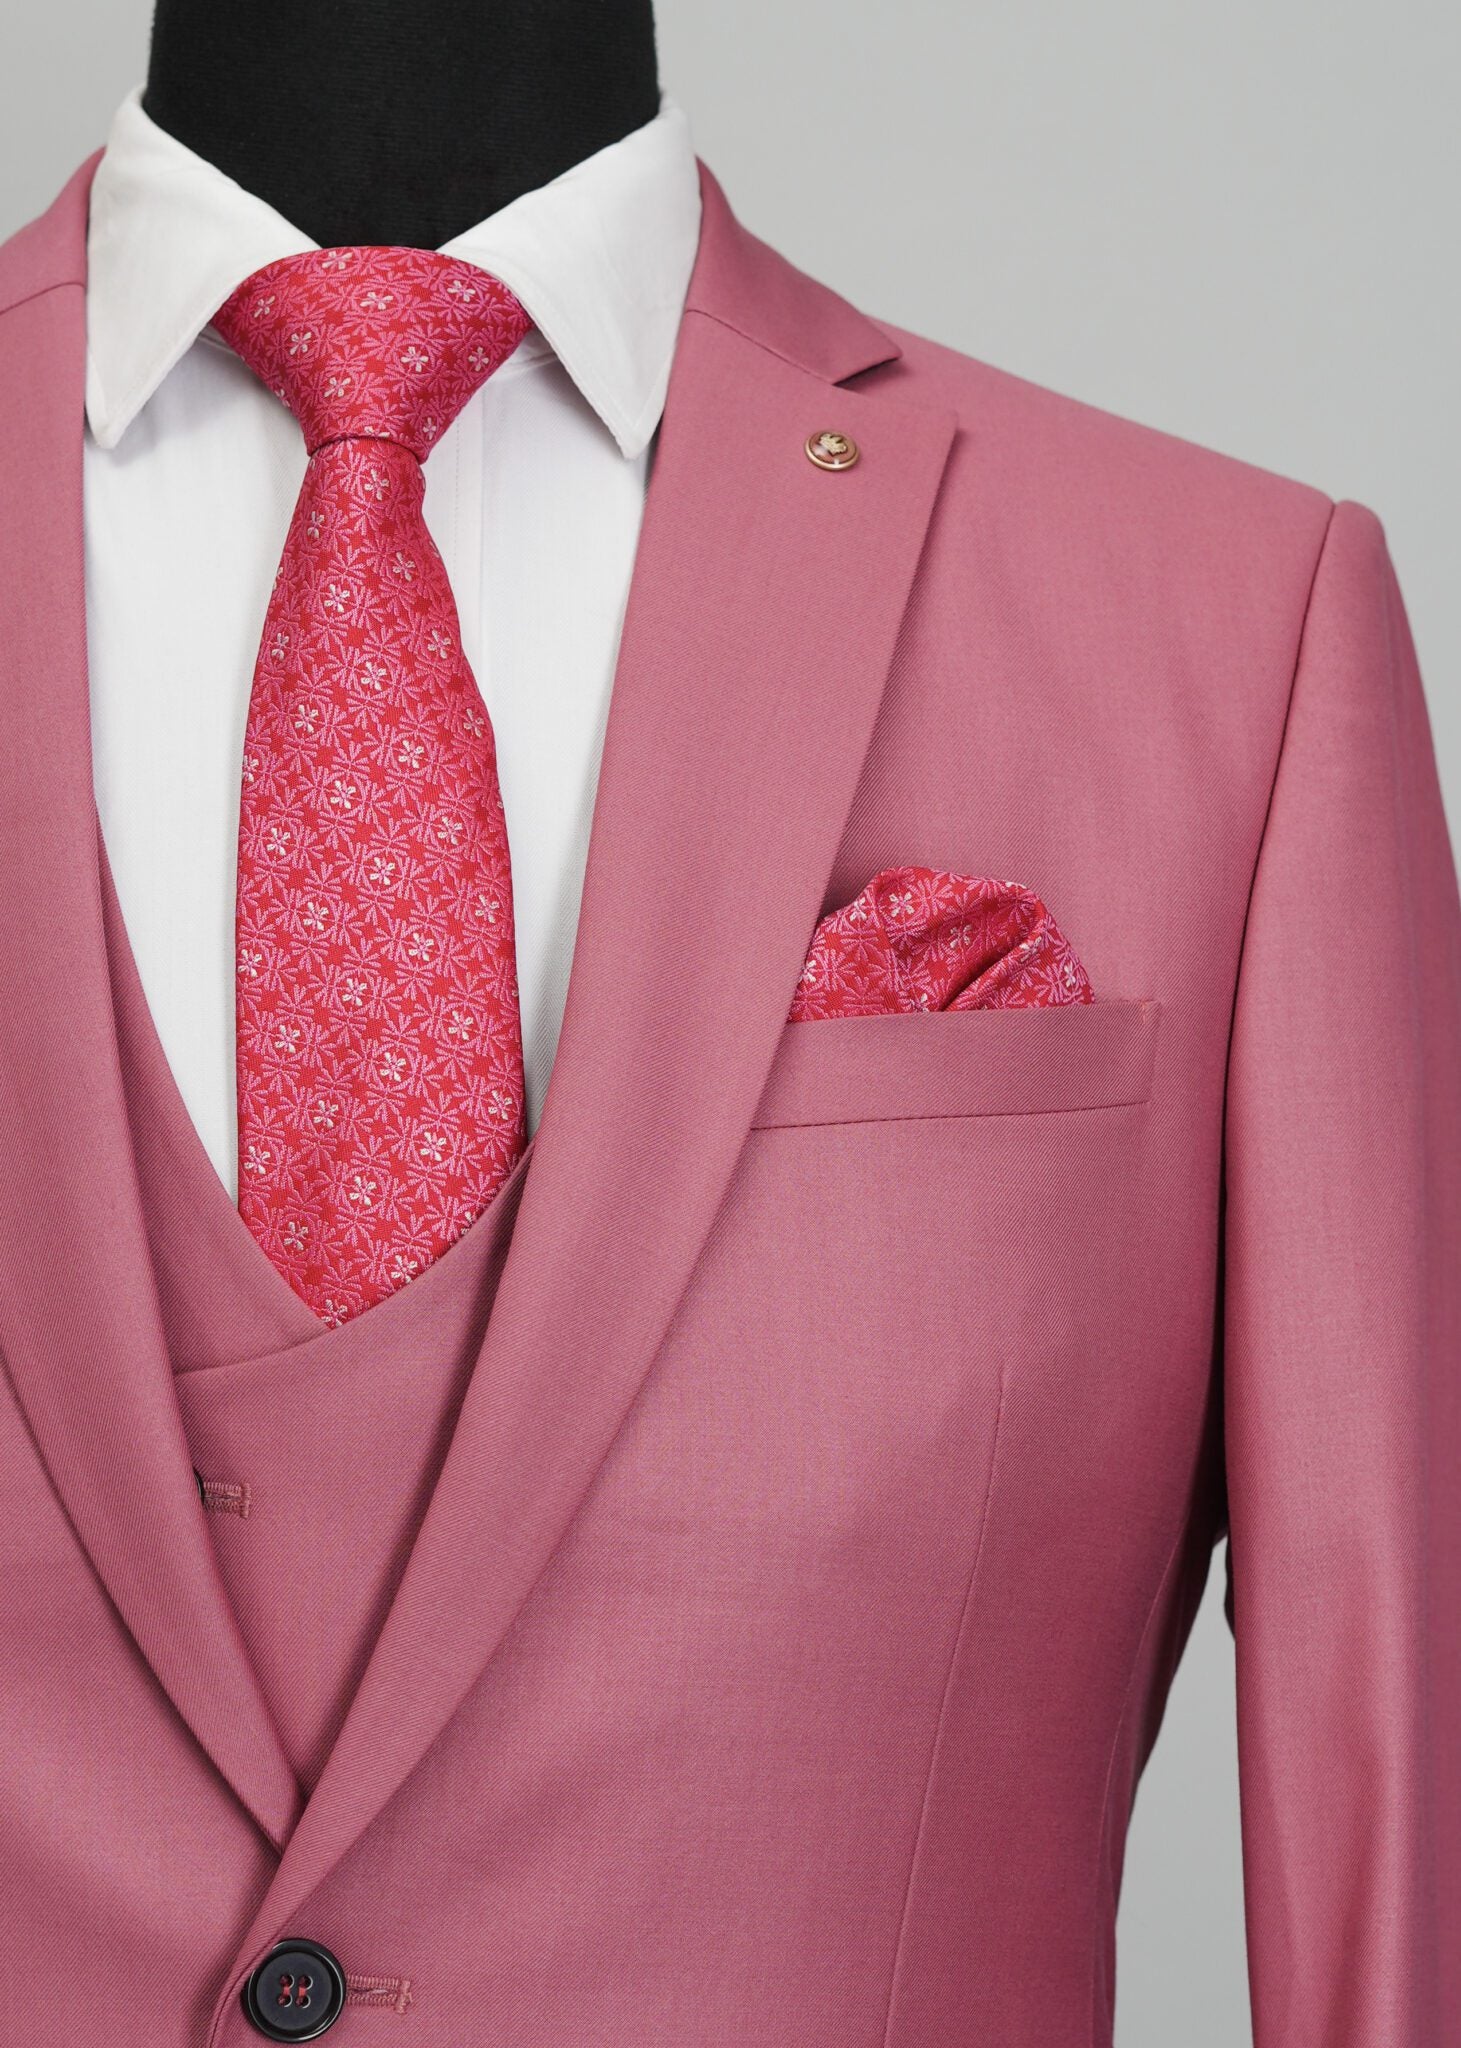 Misty Rose Solid Plain 5 Piece Suit